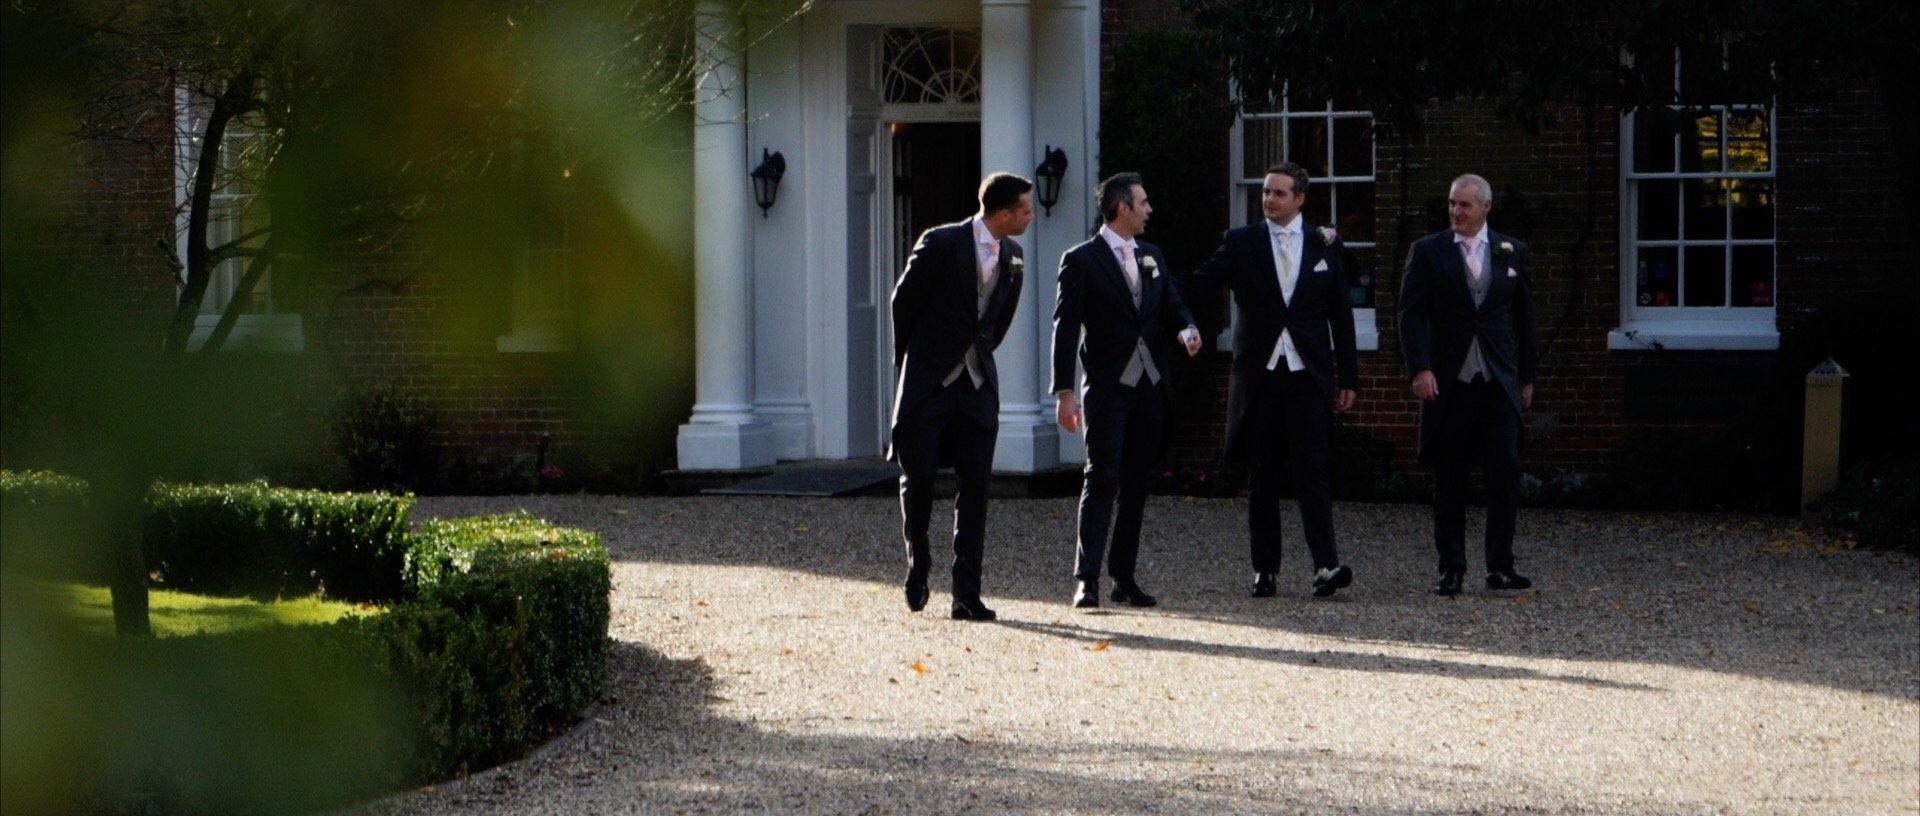 Mulberry House groomsmen and groom wedding video Essex.jpg